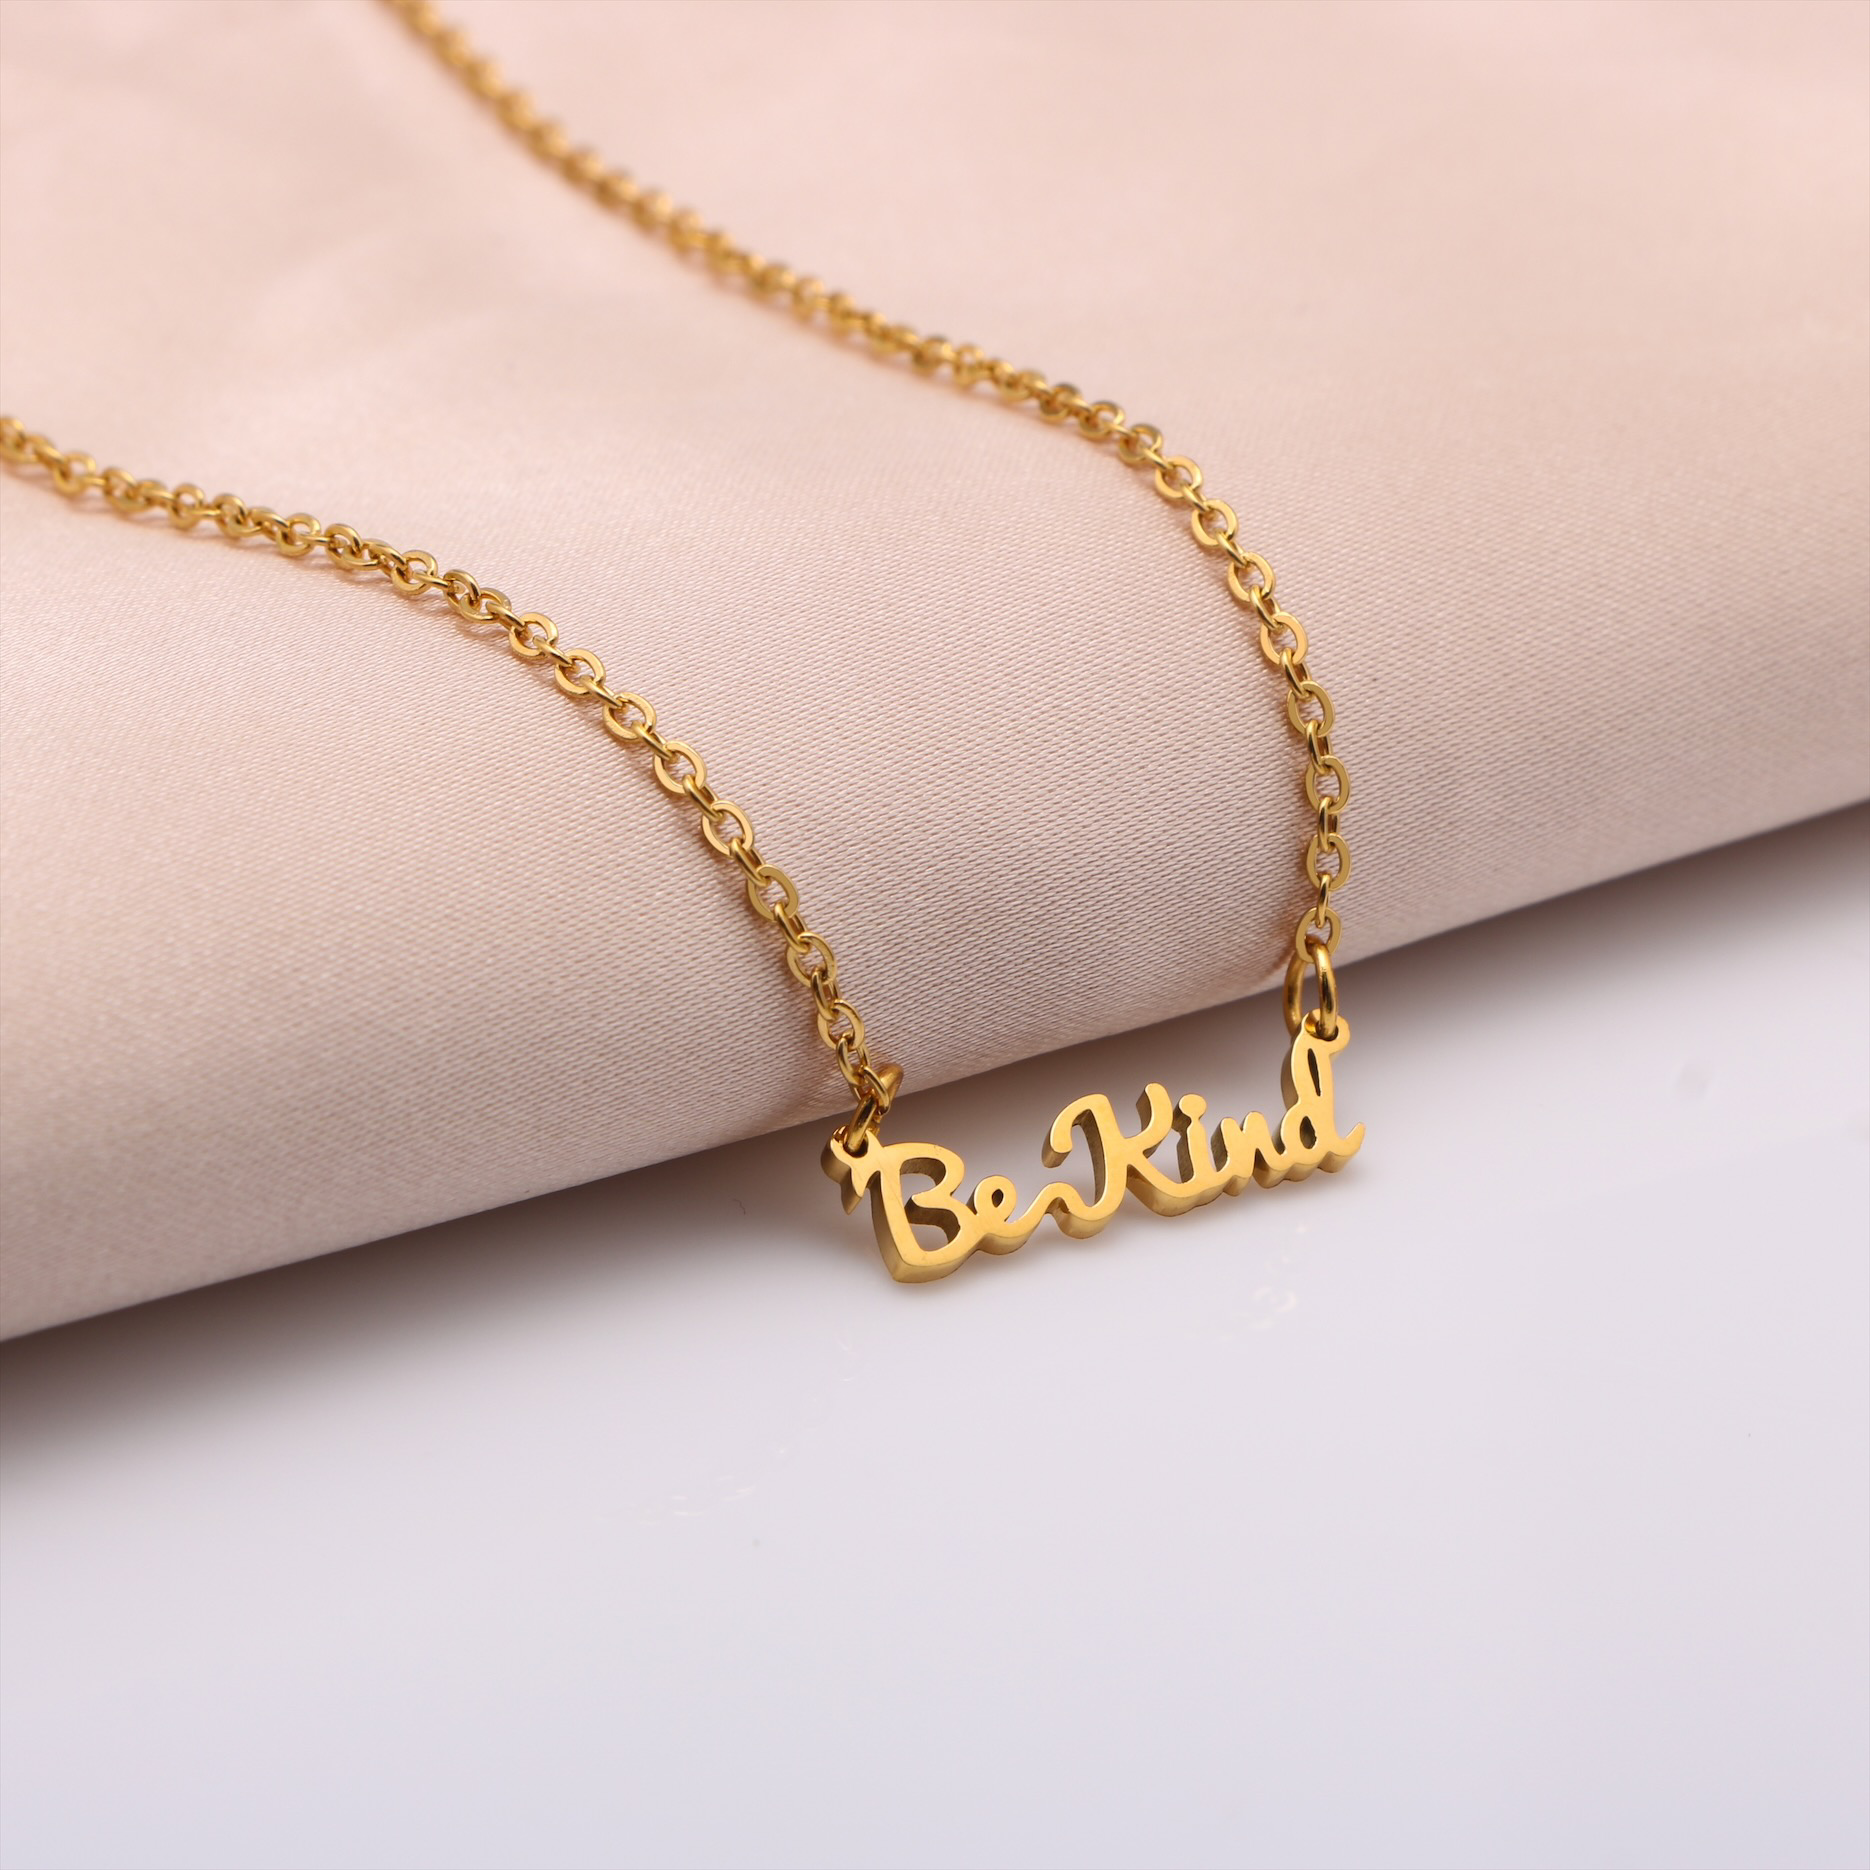 Be Kind - Golden Affirmation Necklace